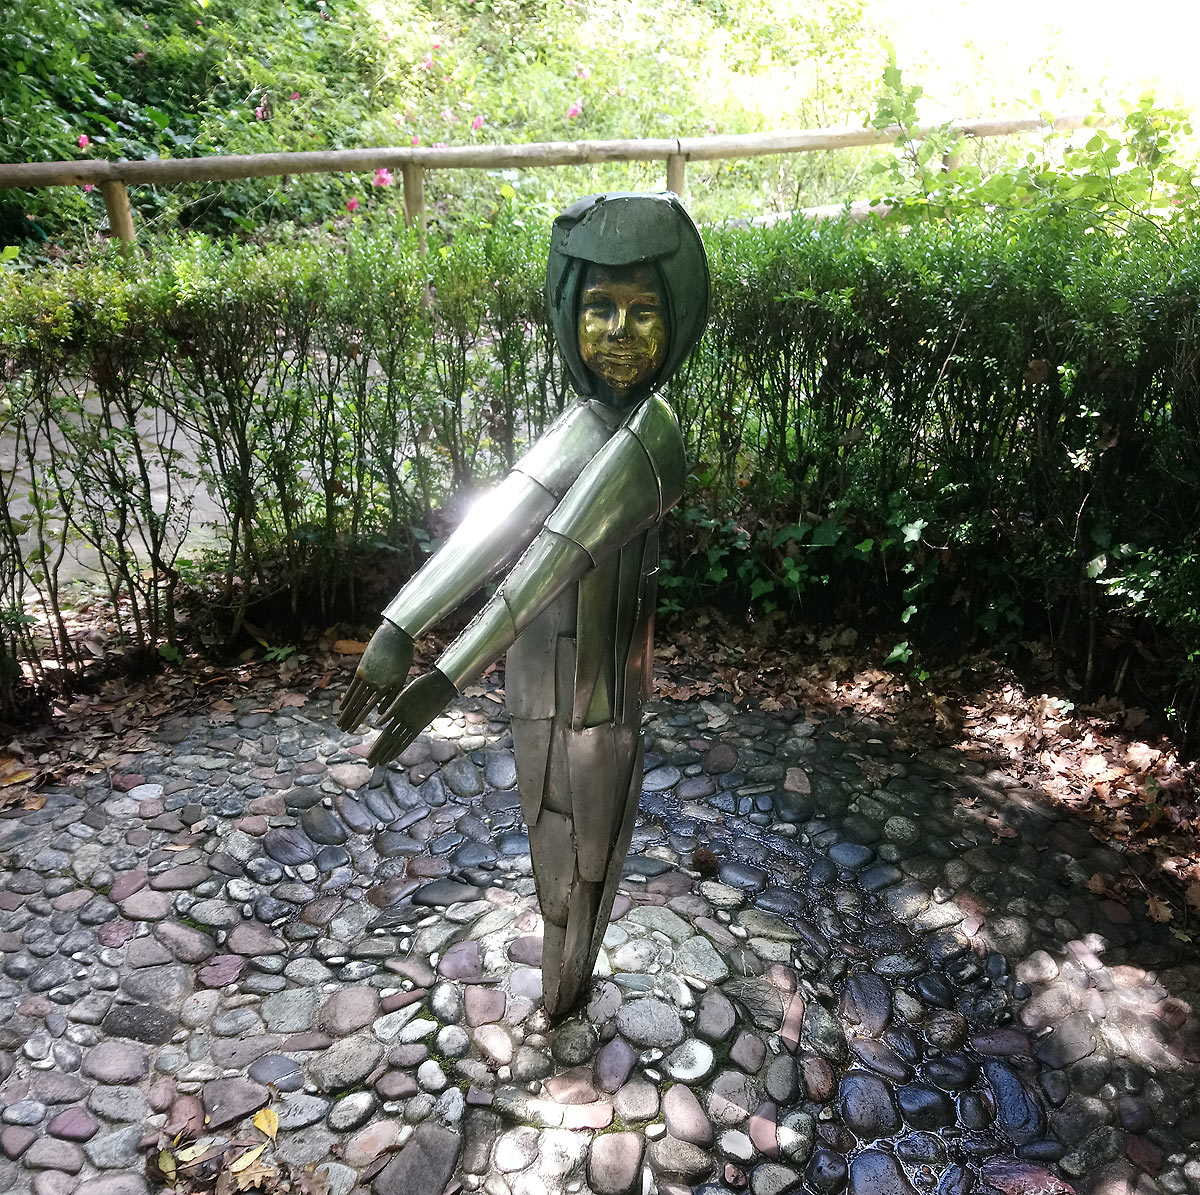 Pietro Consagra, La fata bambina (1963; bronzo; Collodi, Parco monumentale di Pinocchio)
